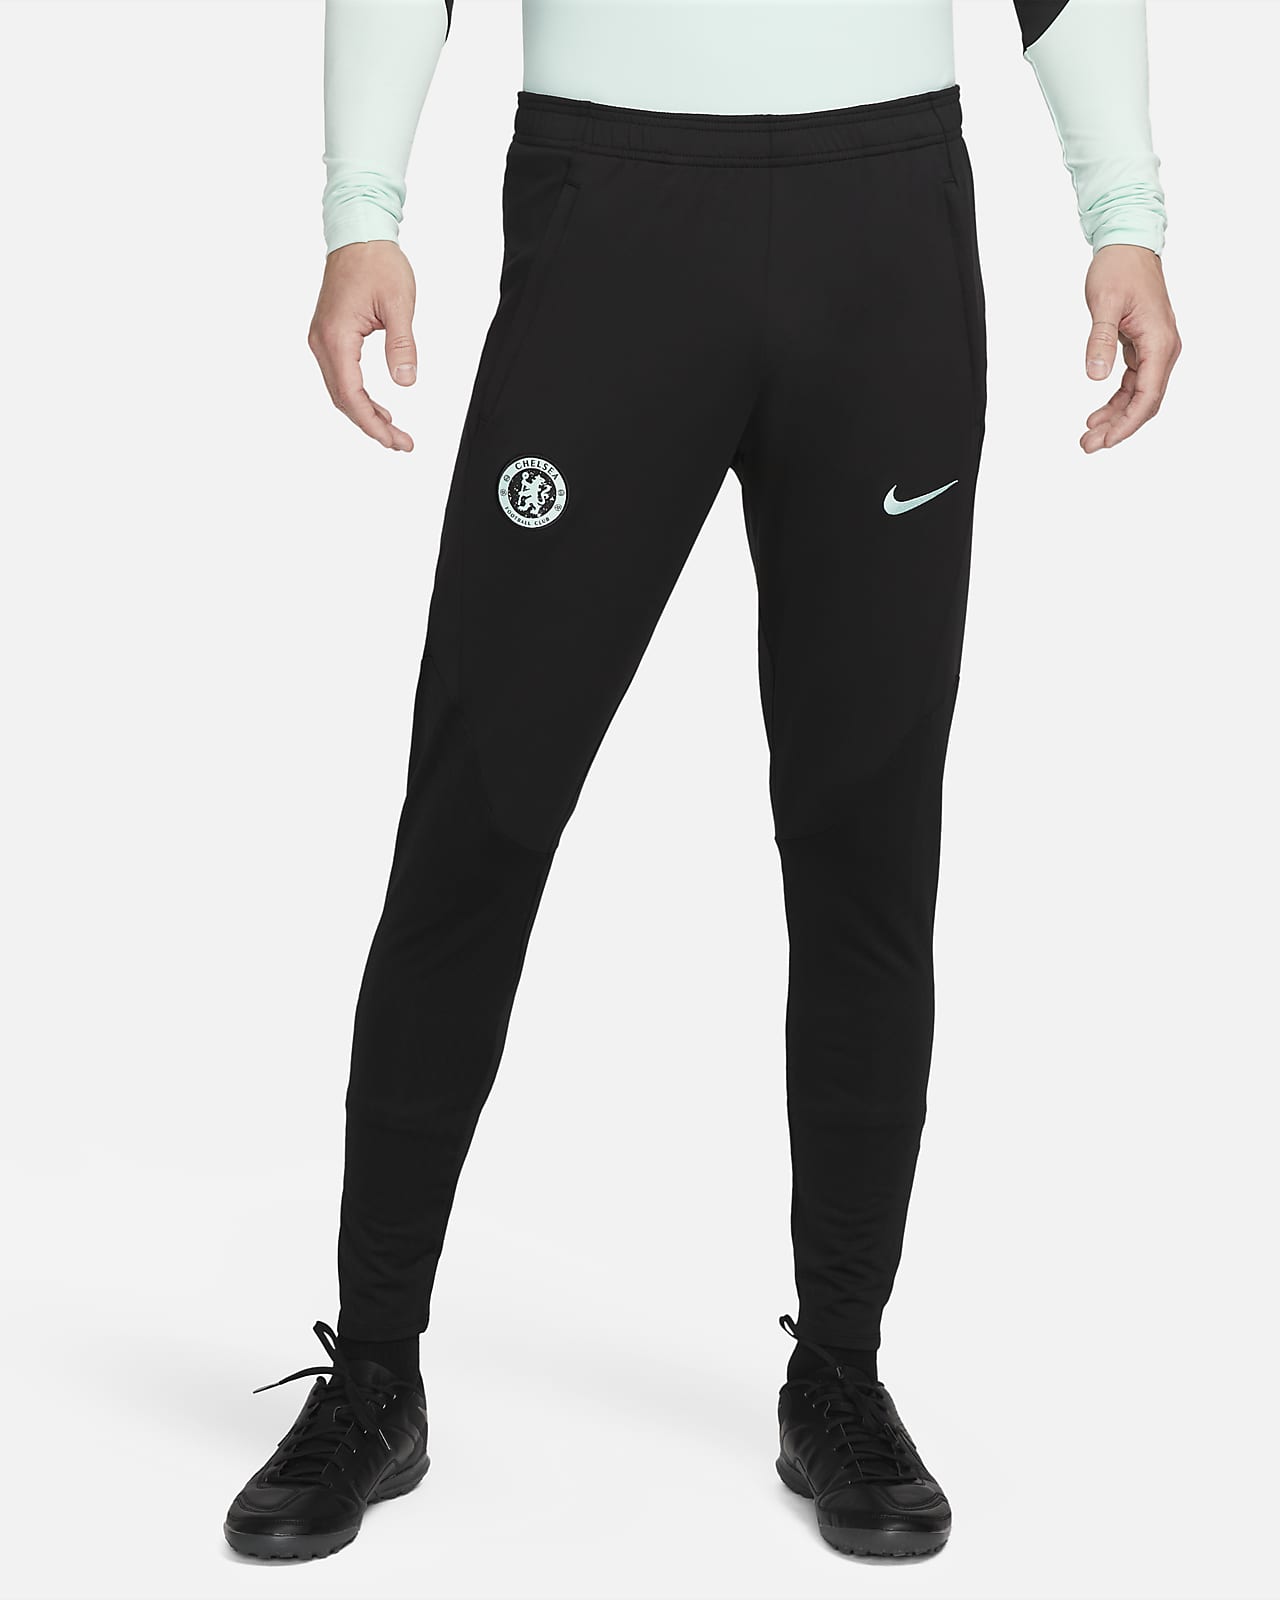 Fotbollsbyxor Chelsea FC Strike (tredjeställ) Nike Dri-FIT i stickat material för män